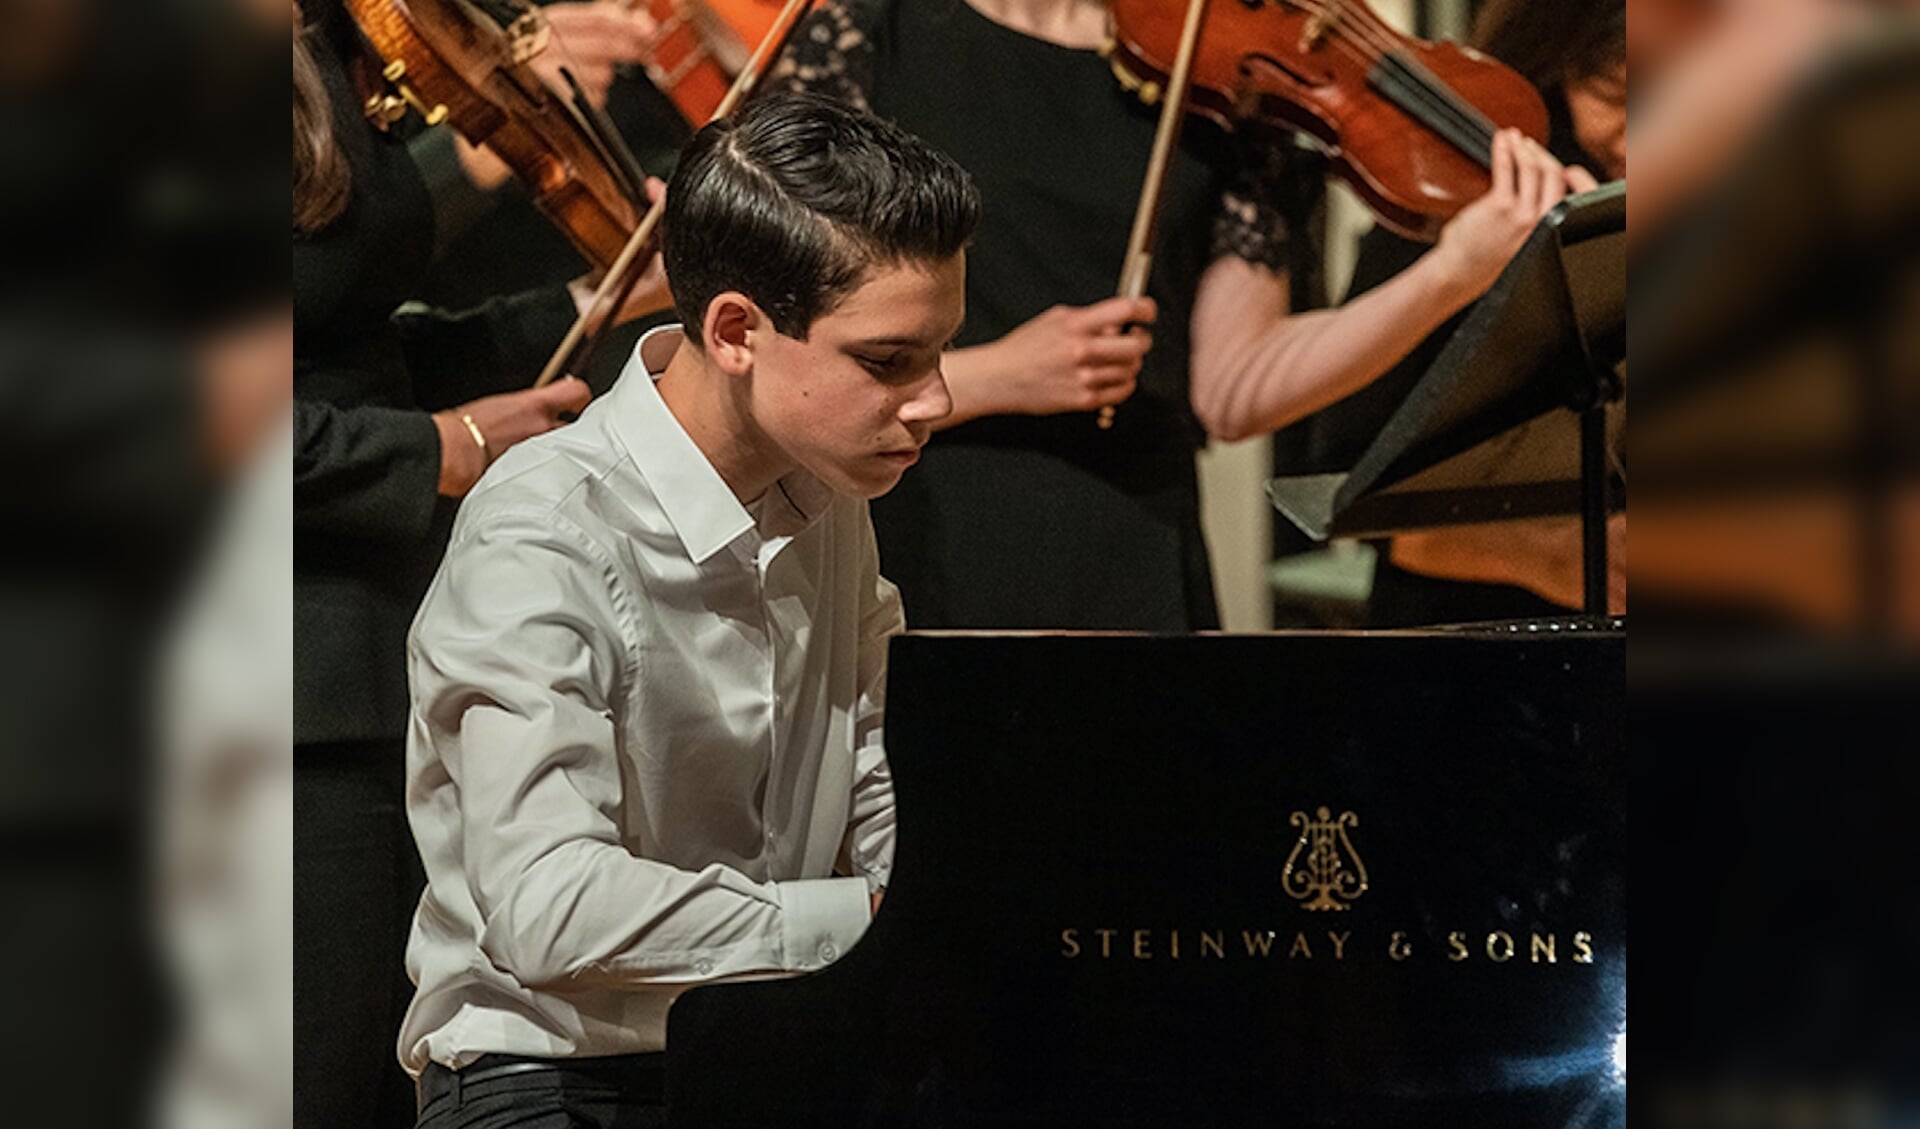 Philip Karmanov (2004) begon op zesjarige leeftijd met pianospelen. In 2017 nam hij deel aan het Prinses Christina Concours, wat hem een eervolle vermelding opleverde.